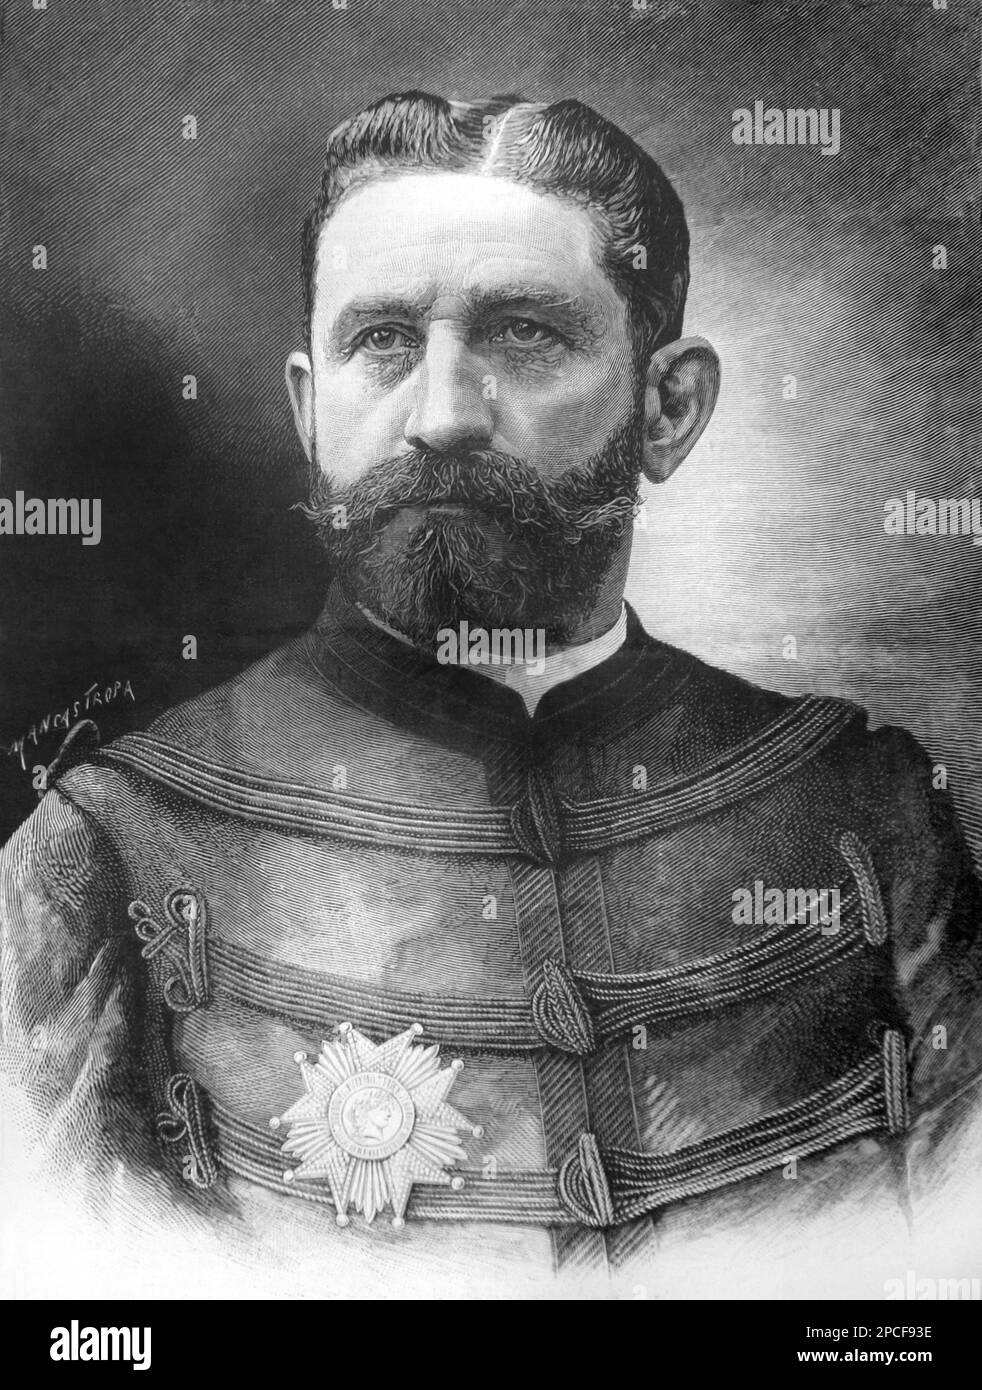 1888, FRANKREICH: GEORGES BOULANGER ( 1837 - 1891) war ein französischer General und reaktionärer Politiker . Gravur von ILLUSTRAZIONE ITALIANA , 1888 , von Illustrator E. Mancastroppa , von einem Foto von NADAR , Paris - POLITICA - POLITISCH - foto storiche - foto storica - Portrait - ritratto - Bart - barba - Militäruniform - Divisa - uniforme militare - Baffi - Schnurrbart - Generale - Hut - cappello ------ Archivio GBB Stockfoto